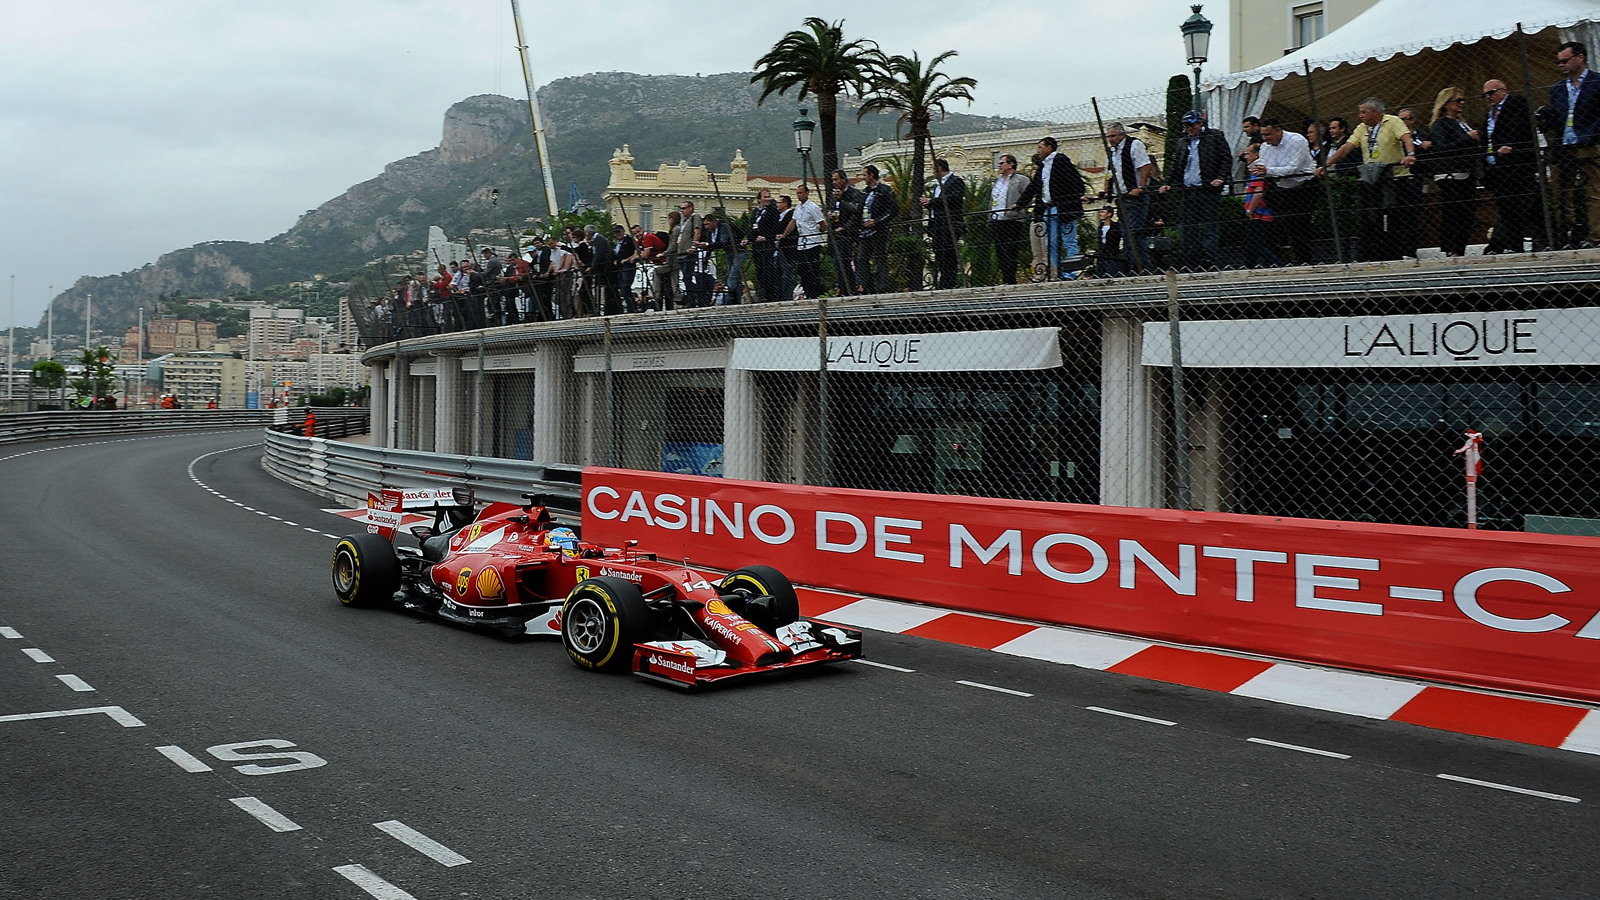 Ferrari at the 2014 Formula One Monaco Grand Prix